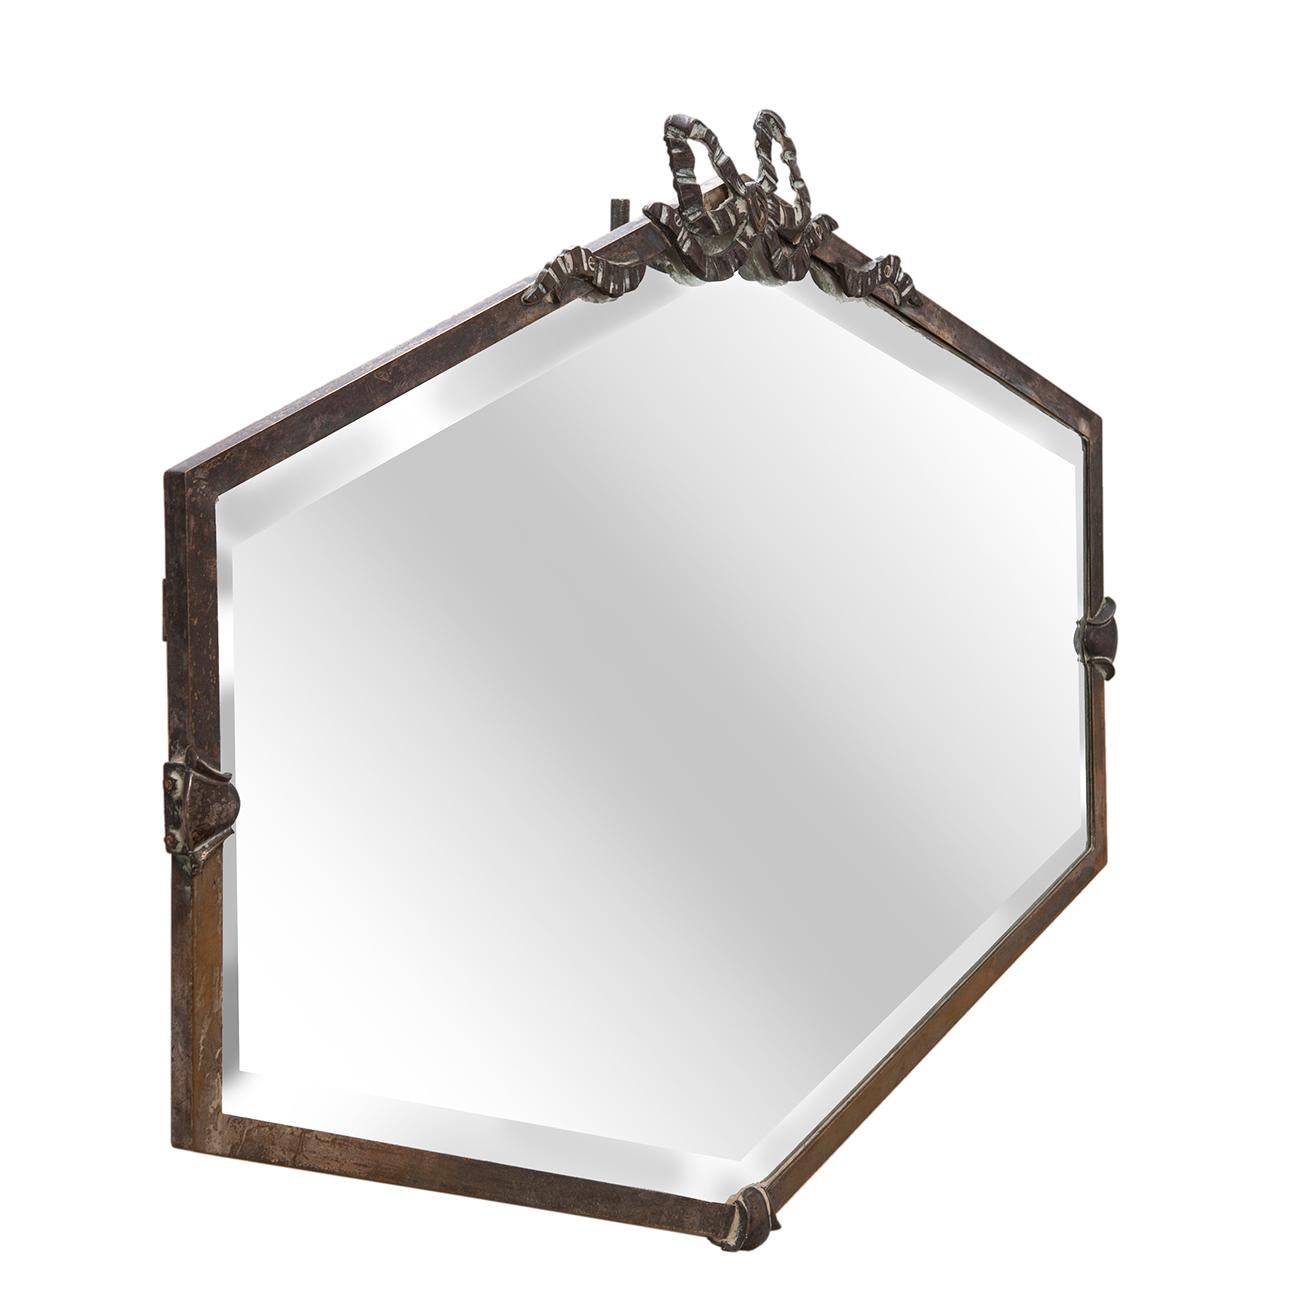 Superbe exemple de miroir encadré de la fin de la déco avec des détails artisanaux sur les panneaux inférieurs et latéraux. Le haut est orné d'un ruban et d'un nœud.
Le miroir biseauté est d'origine.